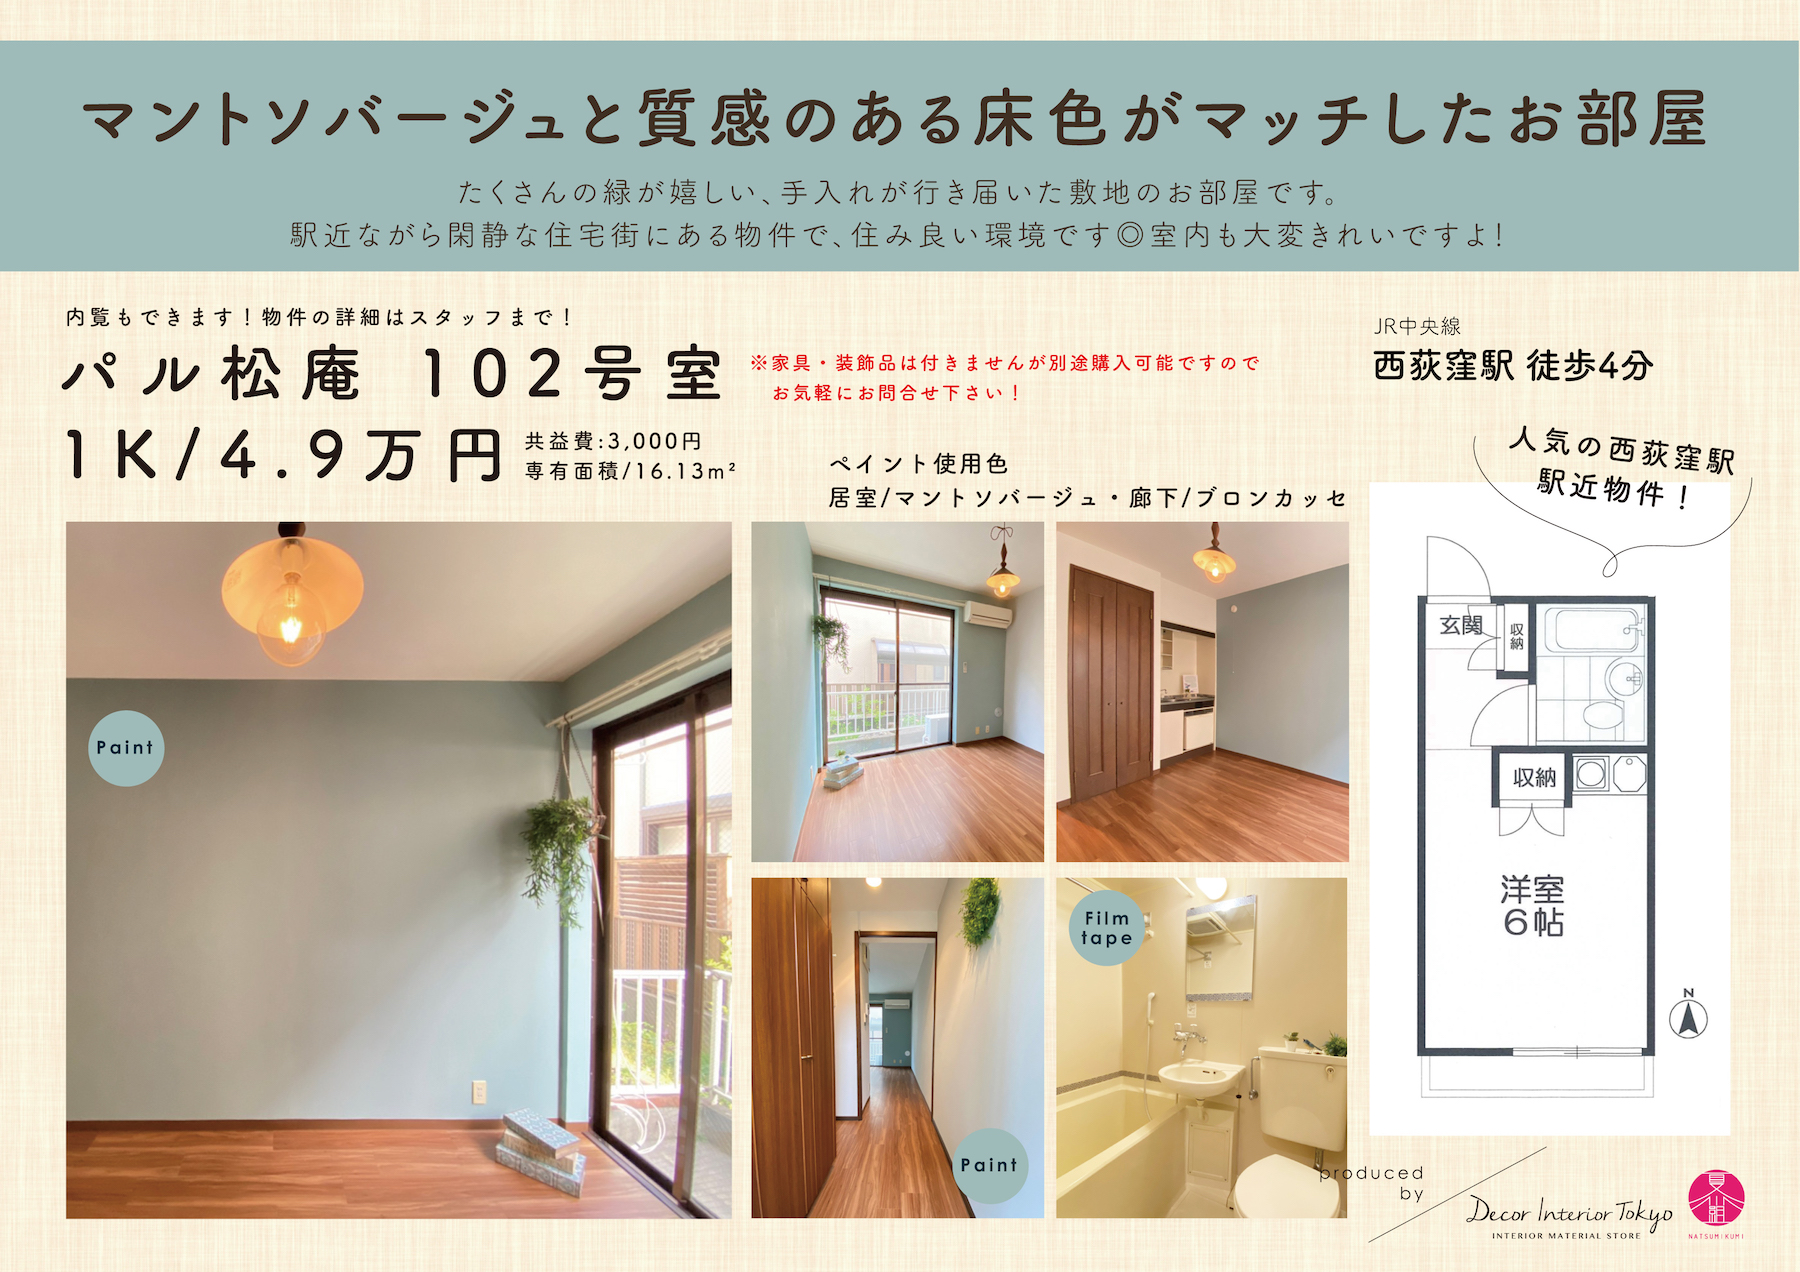 【随時更新】Decor Interior TokyoがプロデュースするDIY賃貸の物件と材料一覧